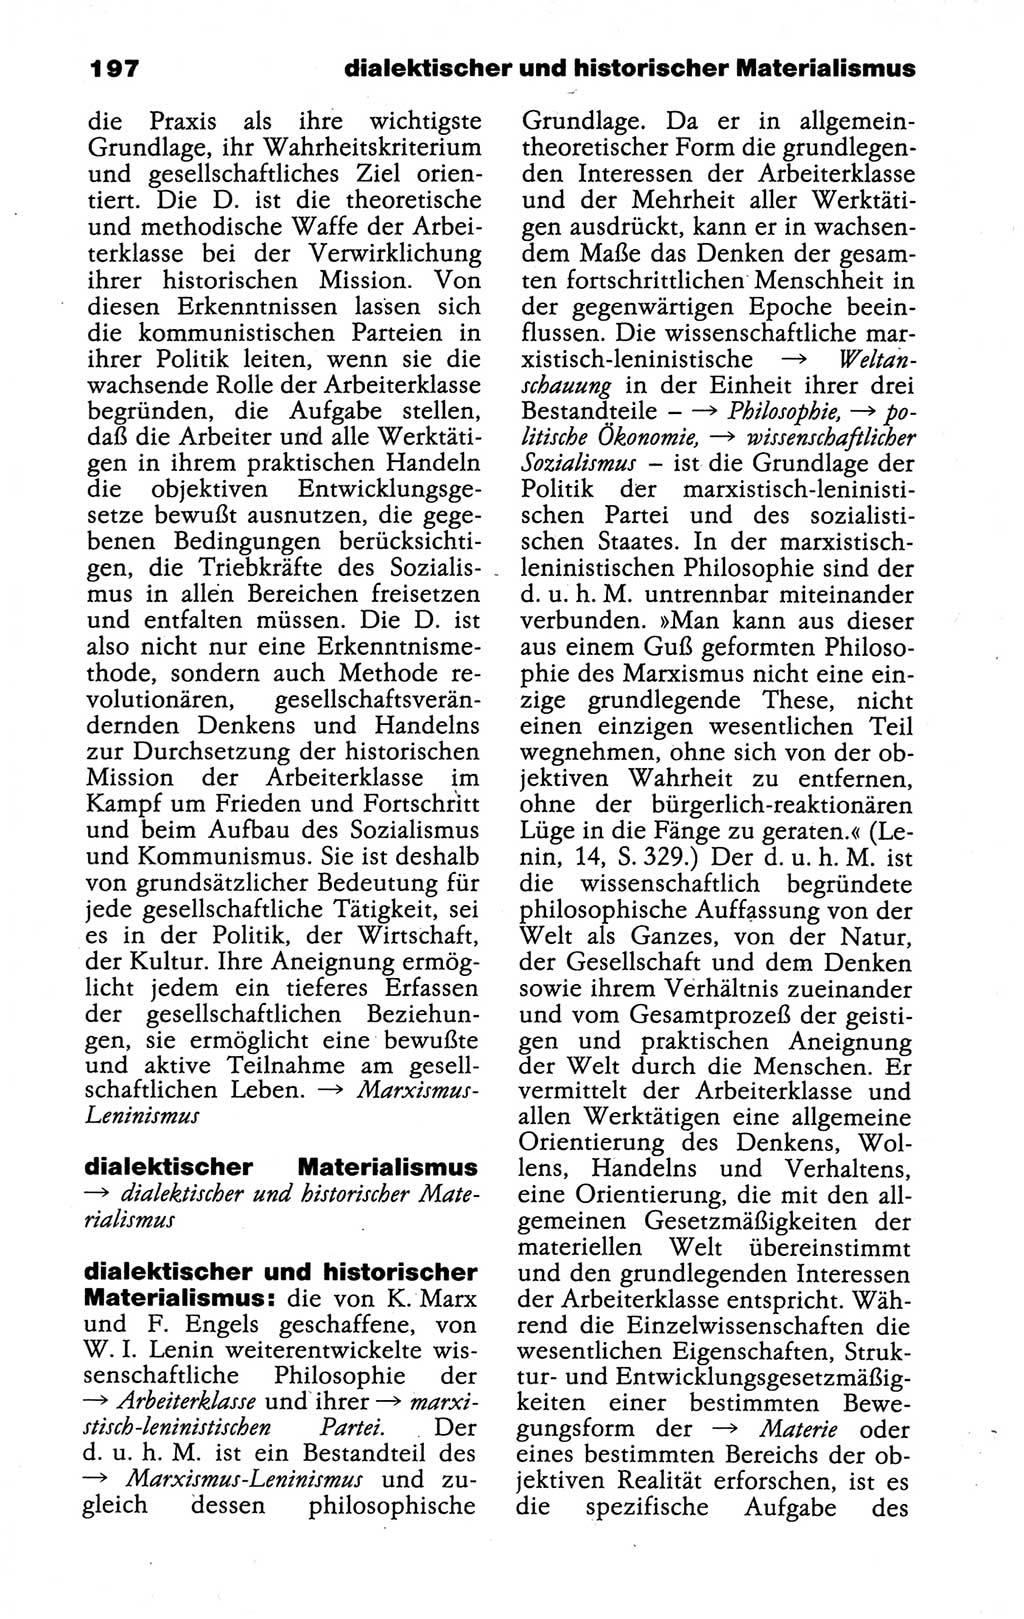 Kleines politisches Wörterbuch [Deutsche Demokratische Republik (DDR)] 1988, Seite 197 (Kl. pol. Wb. DDR 1988, S. 197)